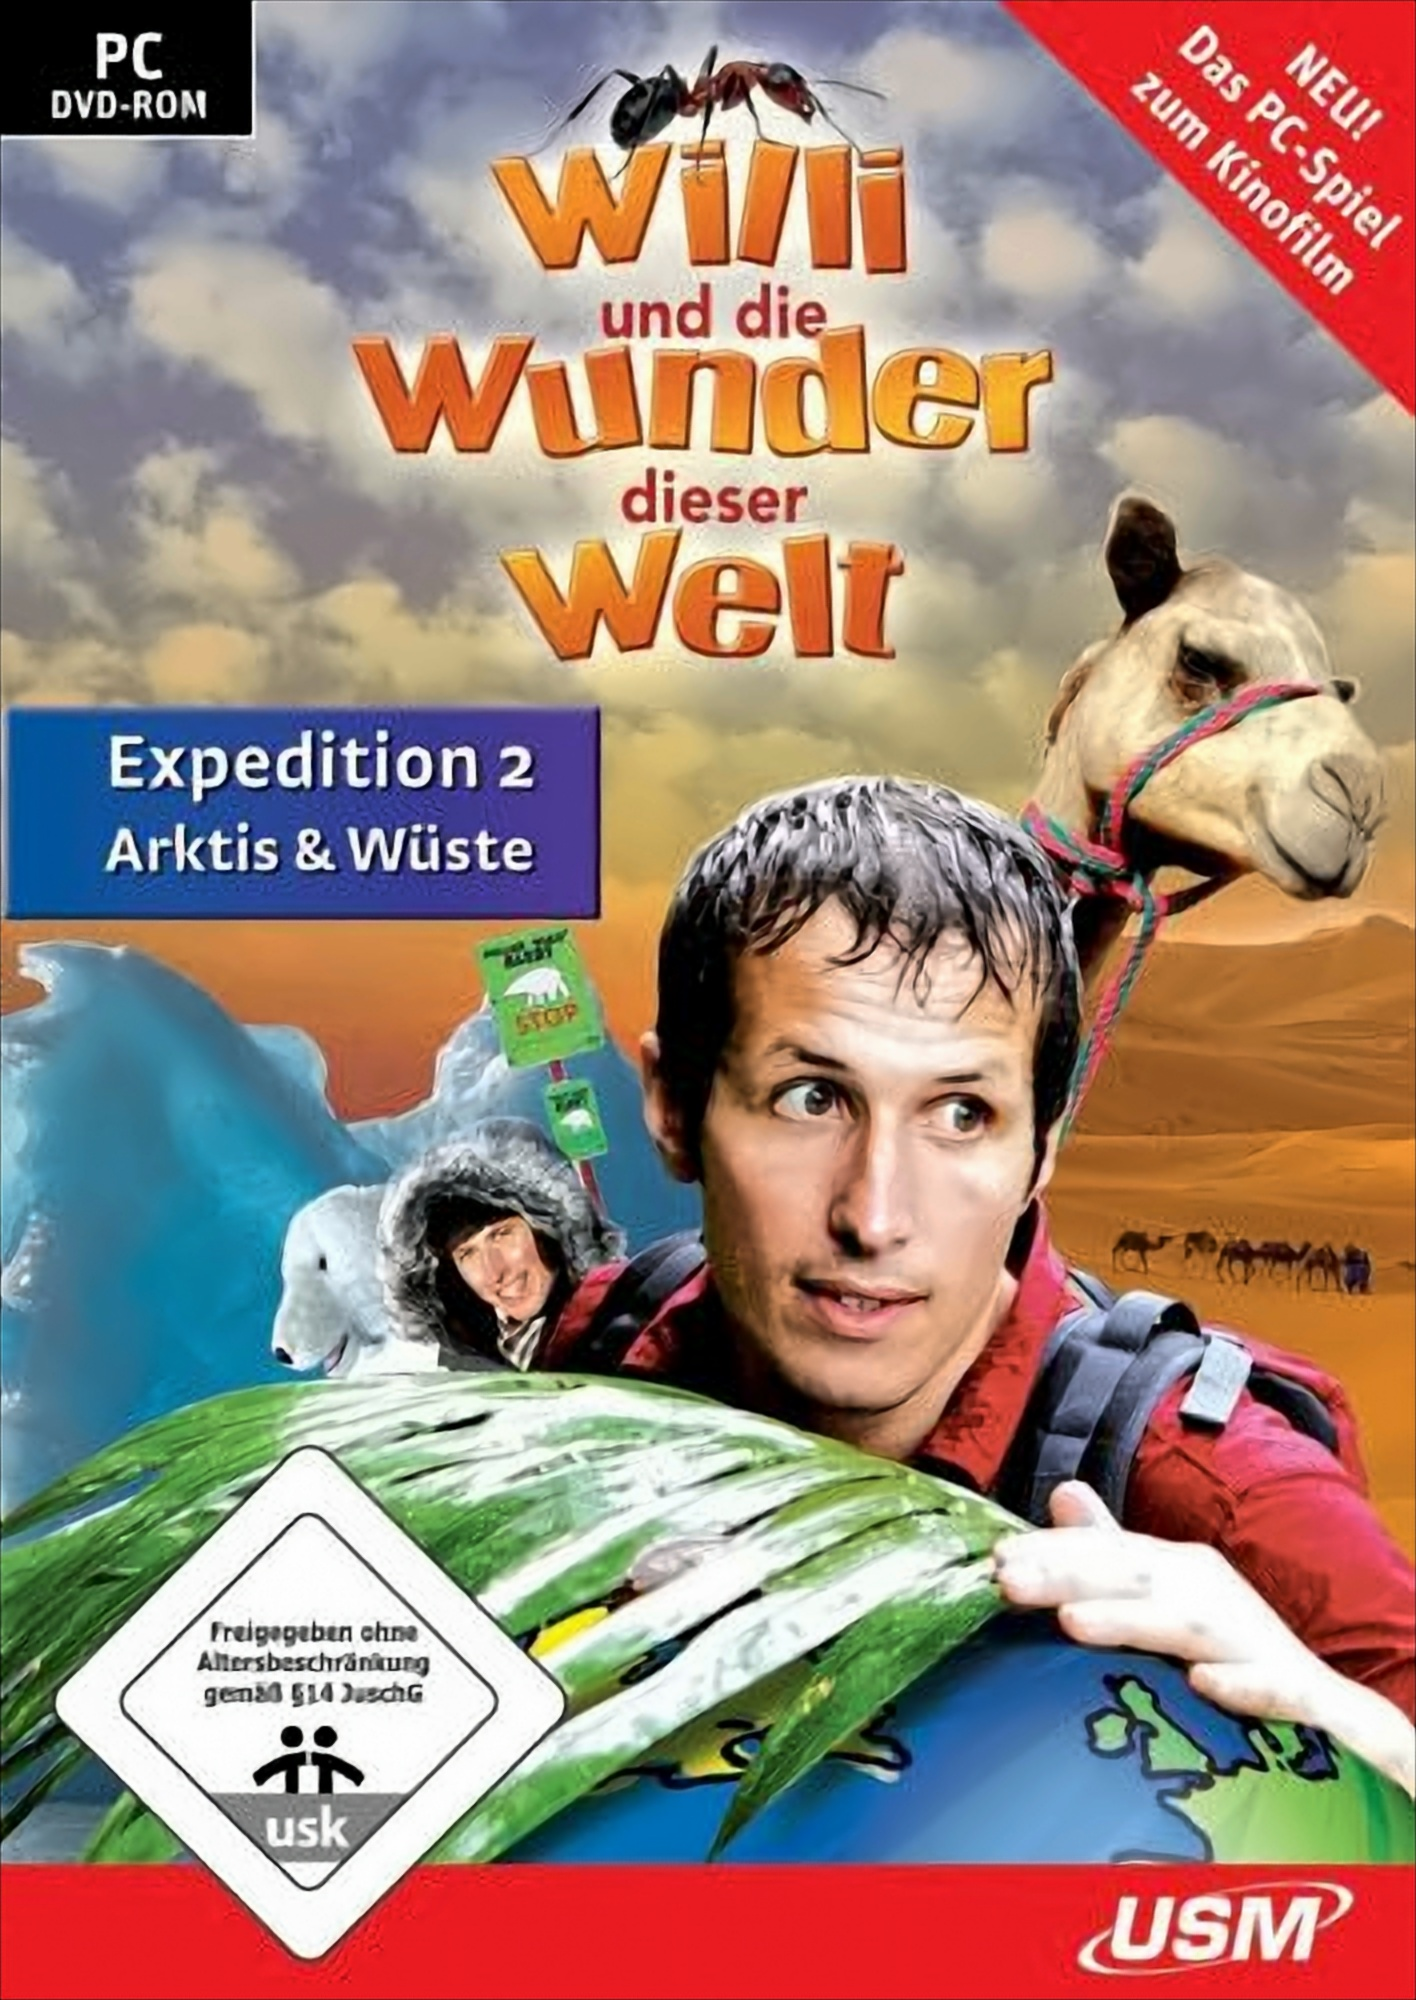 Welt [PC] - Wüste - 2 Arktis die Willi und Expedition & - dieser Wunder